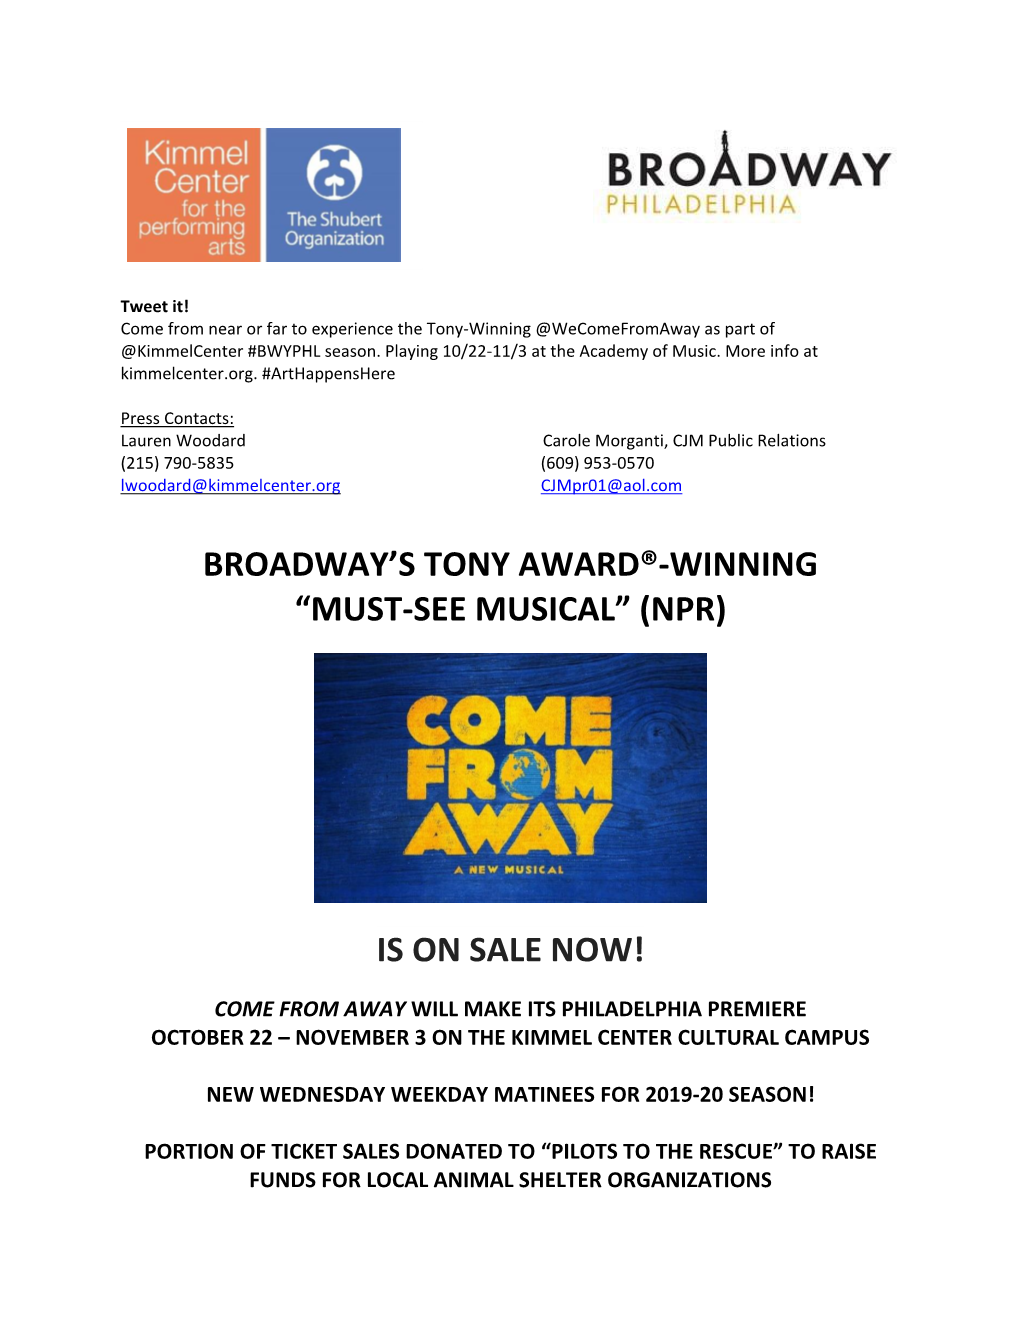 Broadway's Tony Award